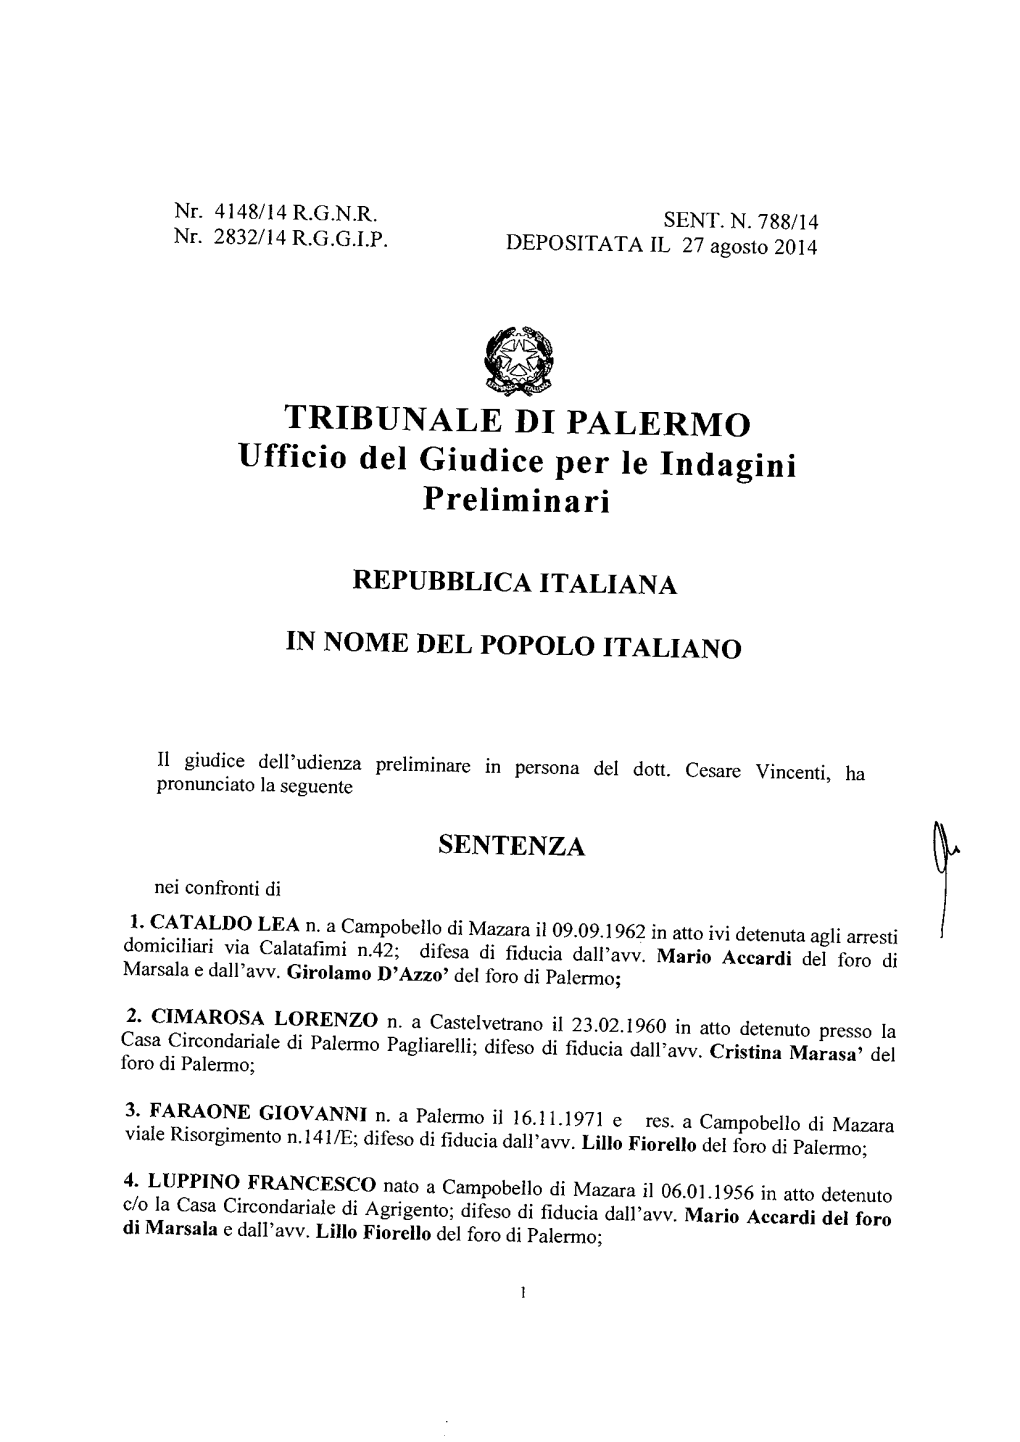 TRIBUNALE DI PALERMO Ufficio Del Giudice Per Le Indagini Preliminari